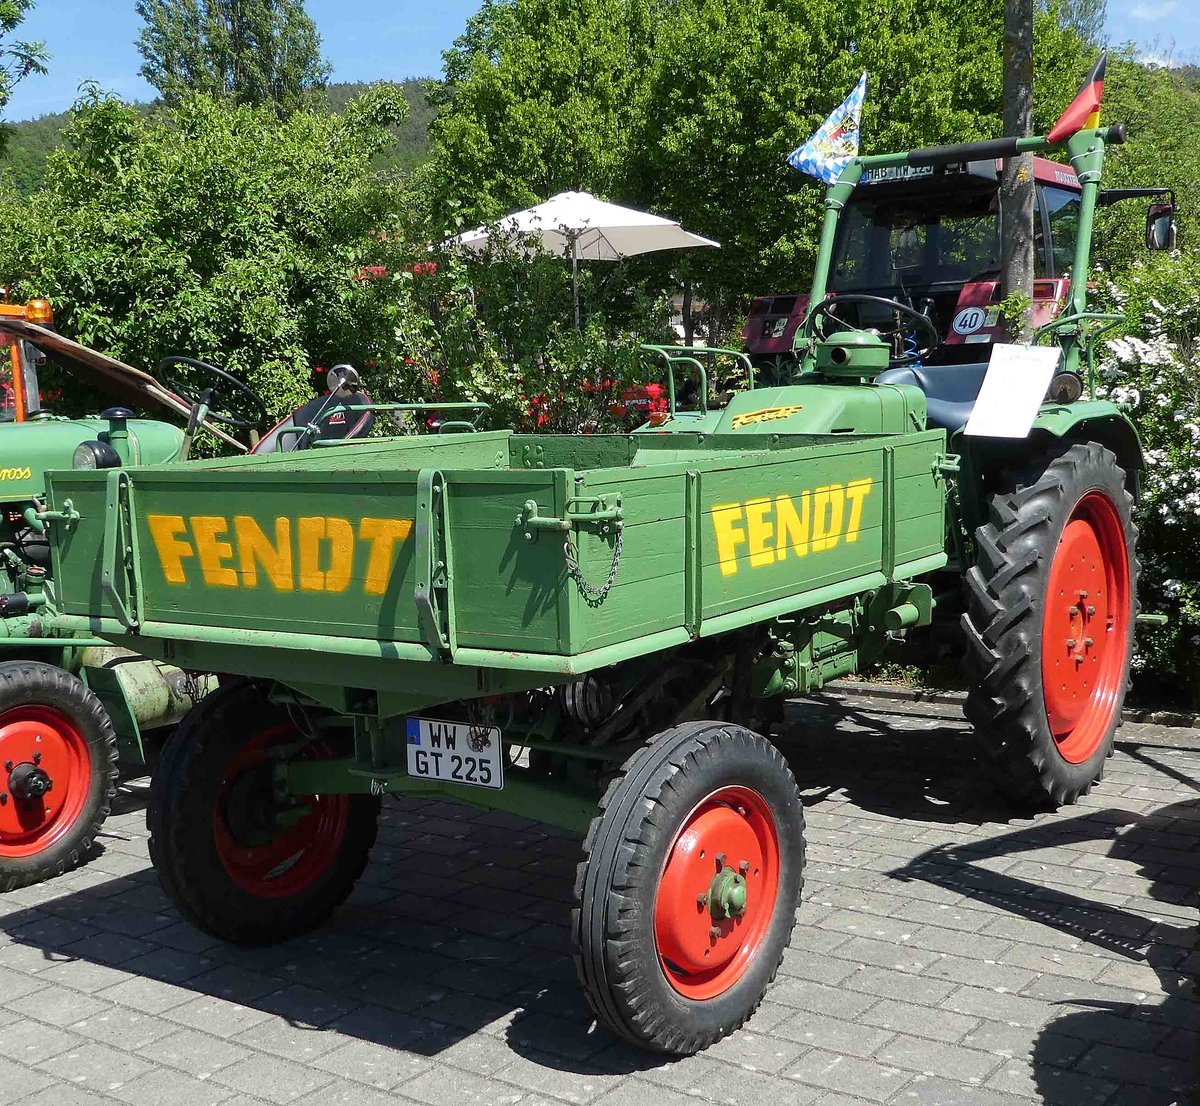 =Fendt GT 225, ausgestellt bei der Traktorenaustellung der Fendt-Freunde Bad Bocklet im Juni 2019